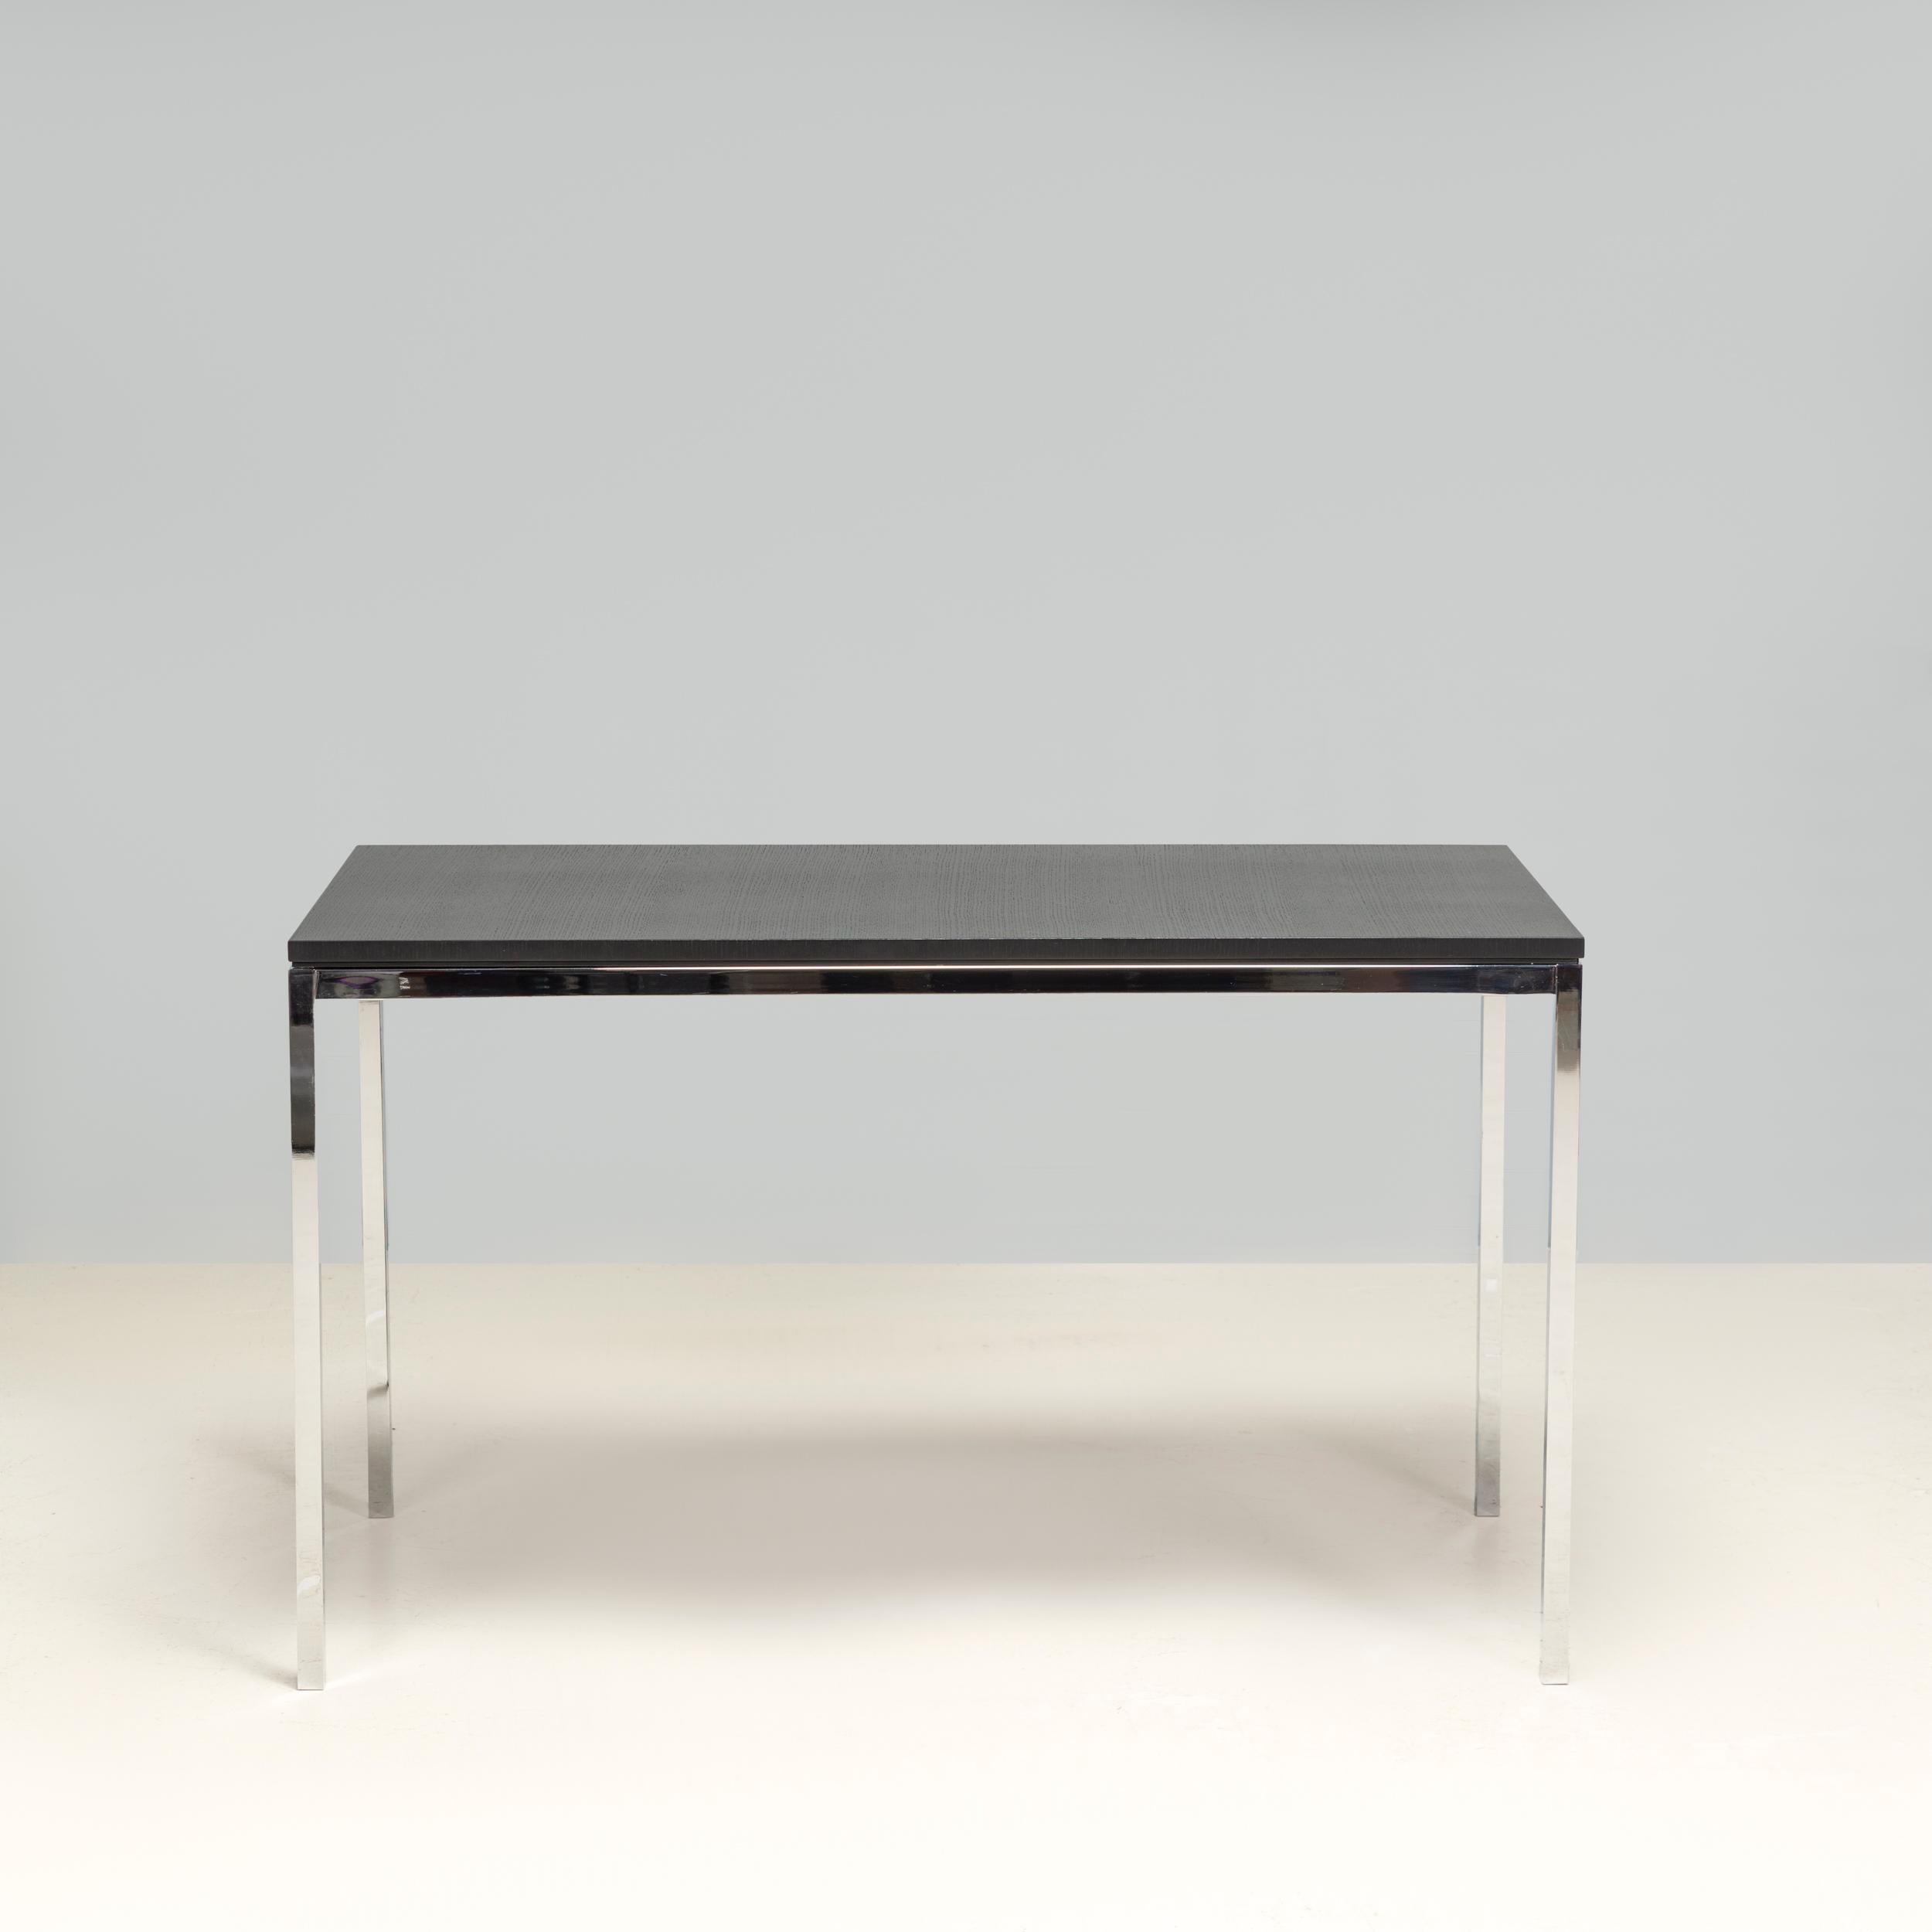 Conçu à l'origine par Florence Knoll en 1954, le Mini Desk fait partie de la gamme High Table fabriquée par Knoll.

Constitué d'une structure élancée en chrome poli, le bureau est doté d'un plateau en placage de chêne ébonisé.

Élégant et